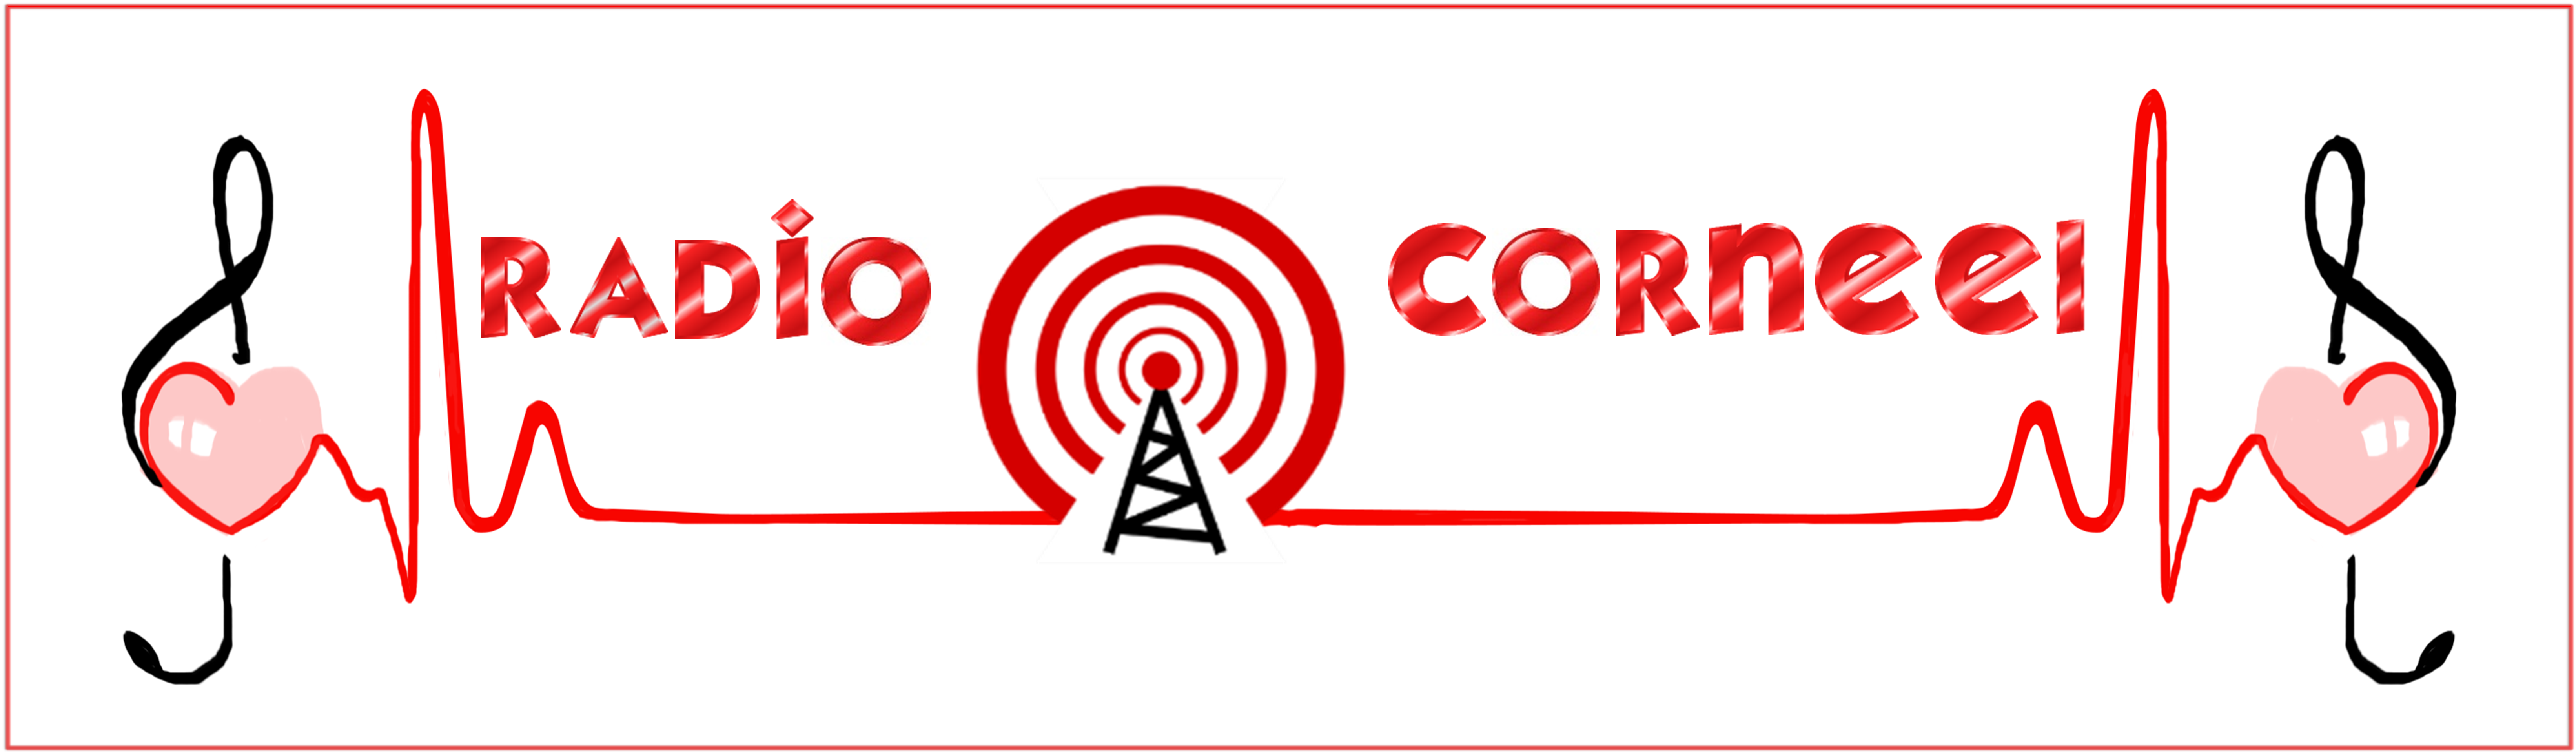 Radio Corneel terug in 2022